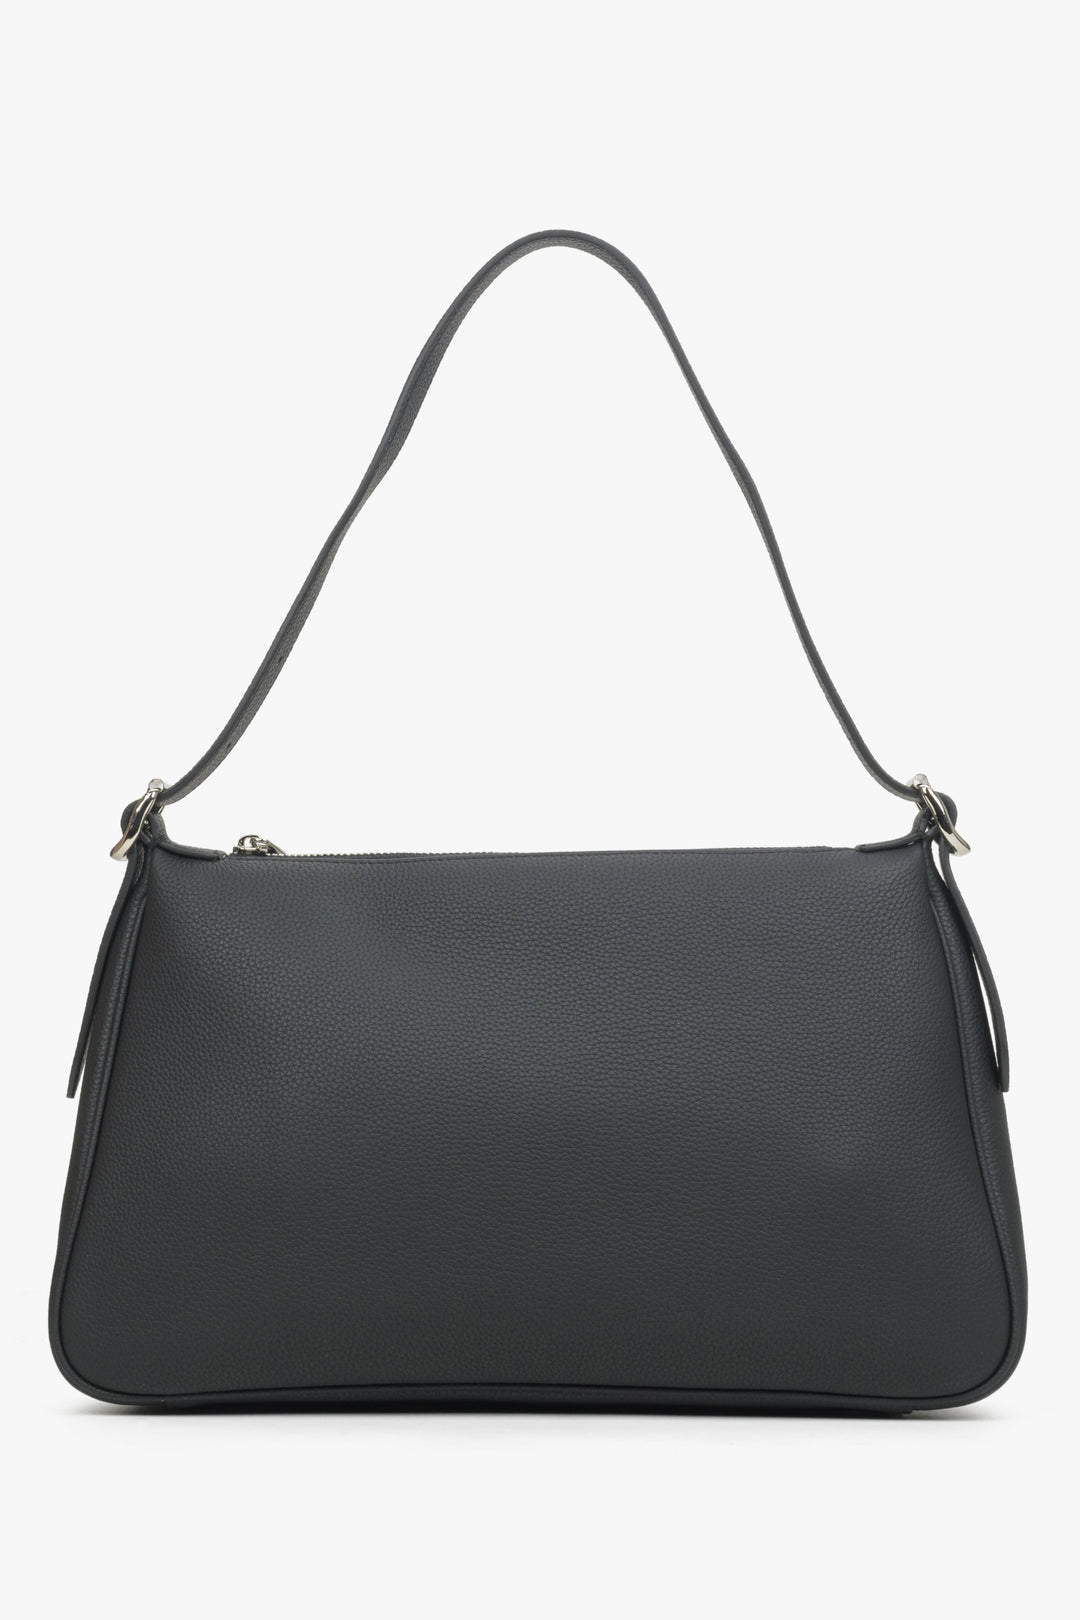 Women's black Estro handbag.